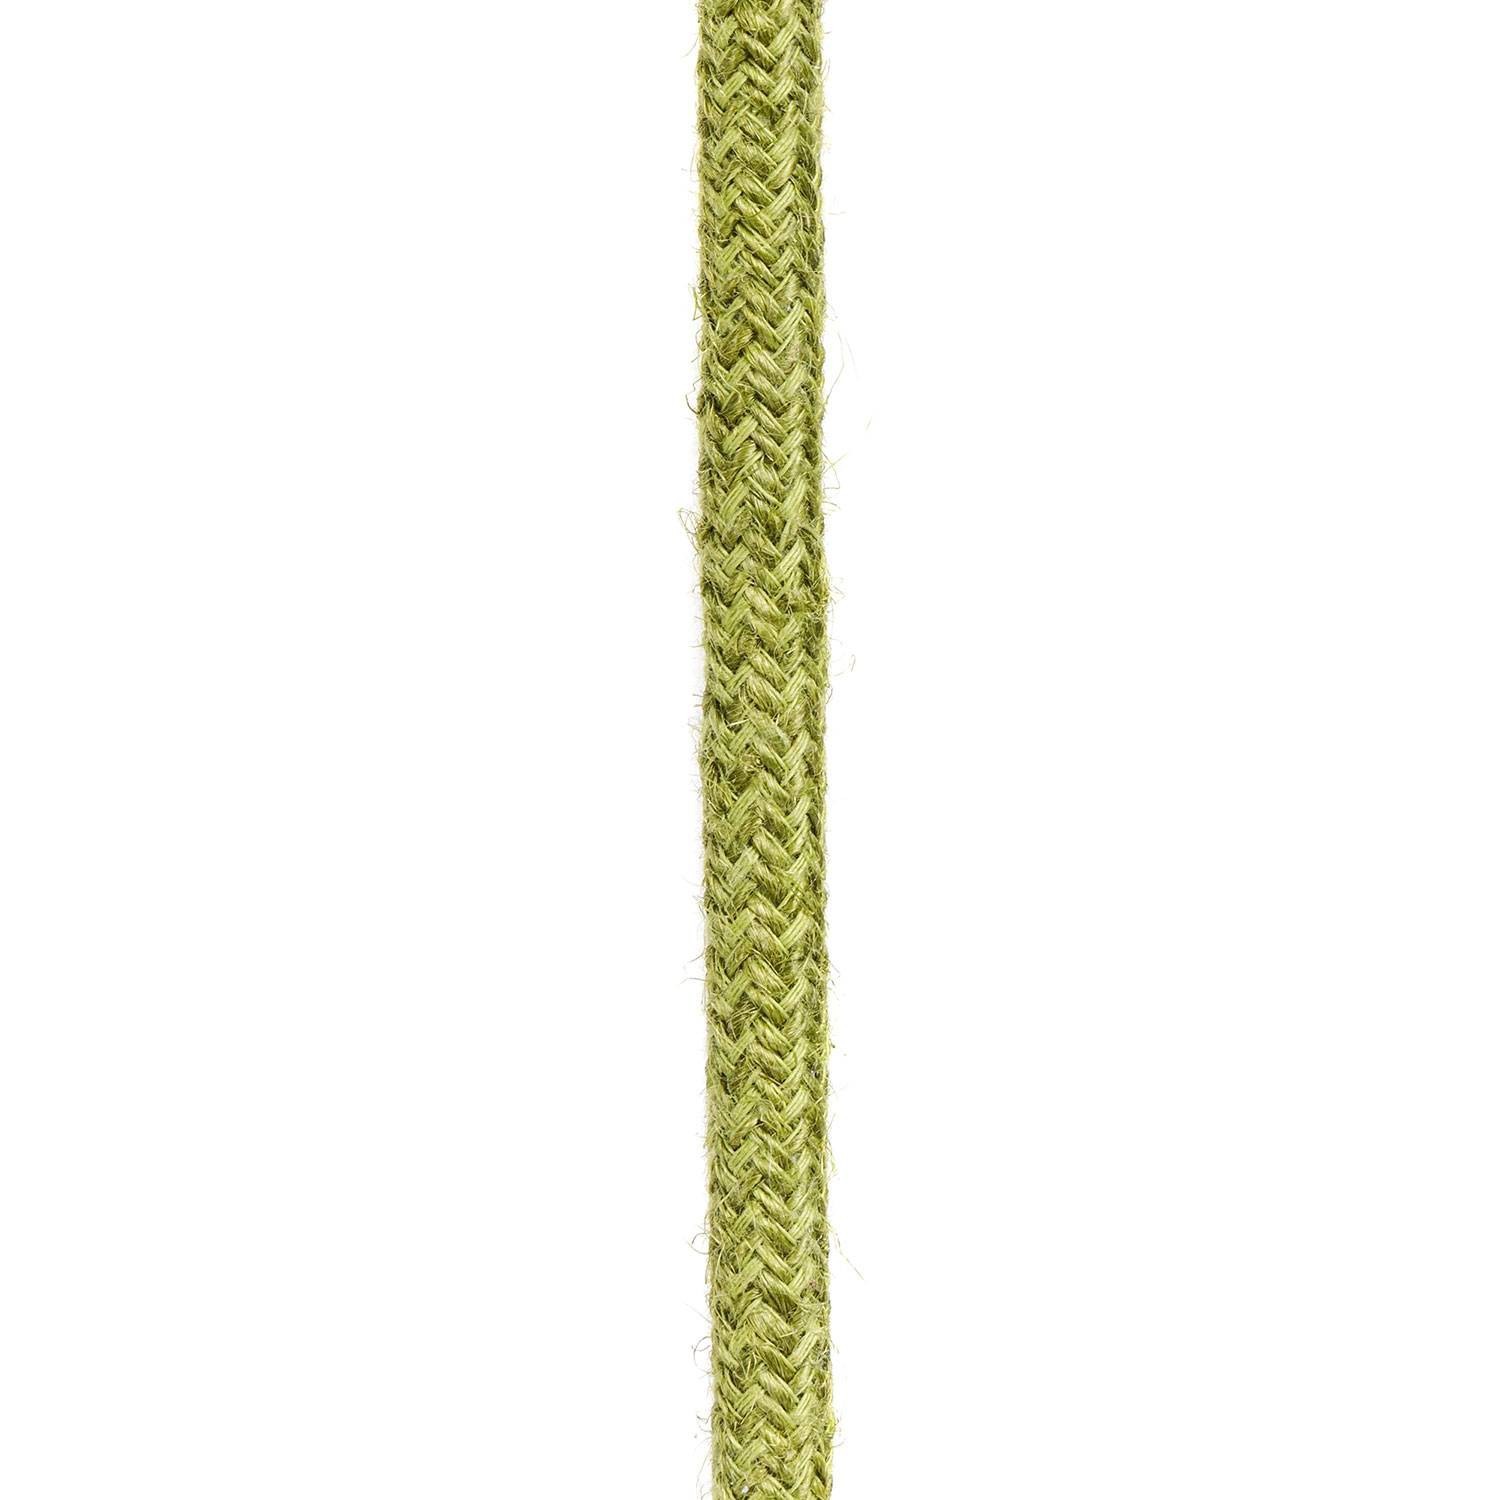 Rundt elkabel dækket af almindelig høgrøn RN23 jute